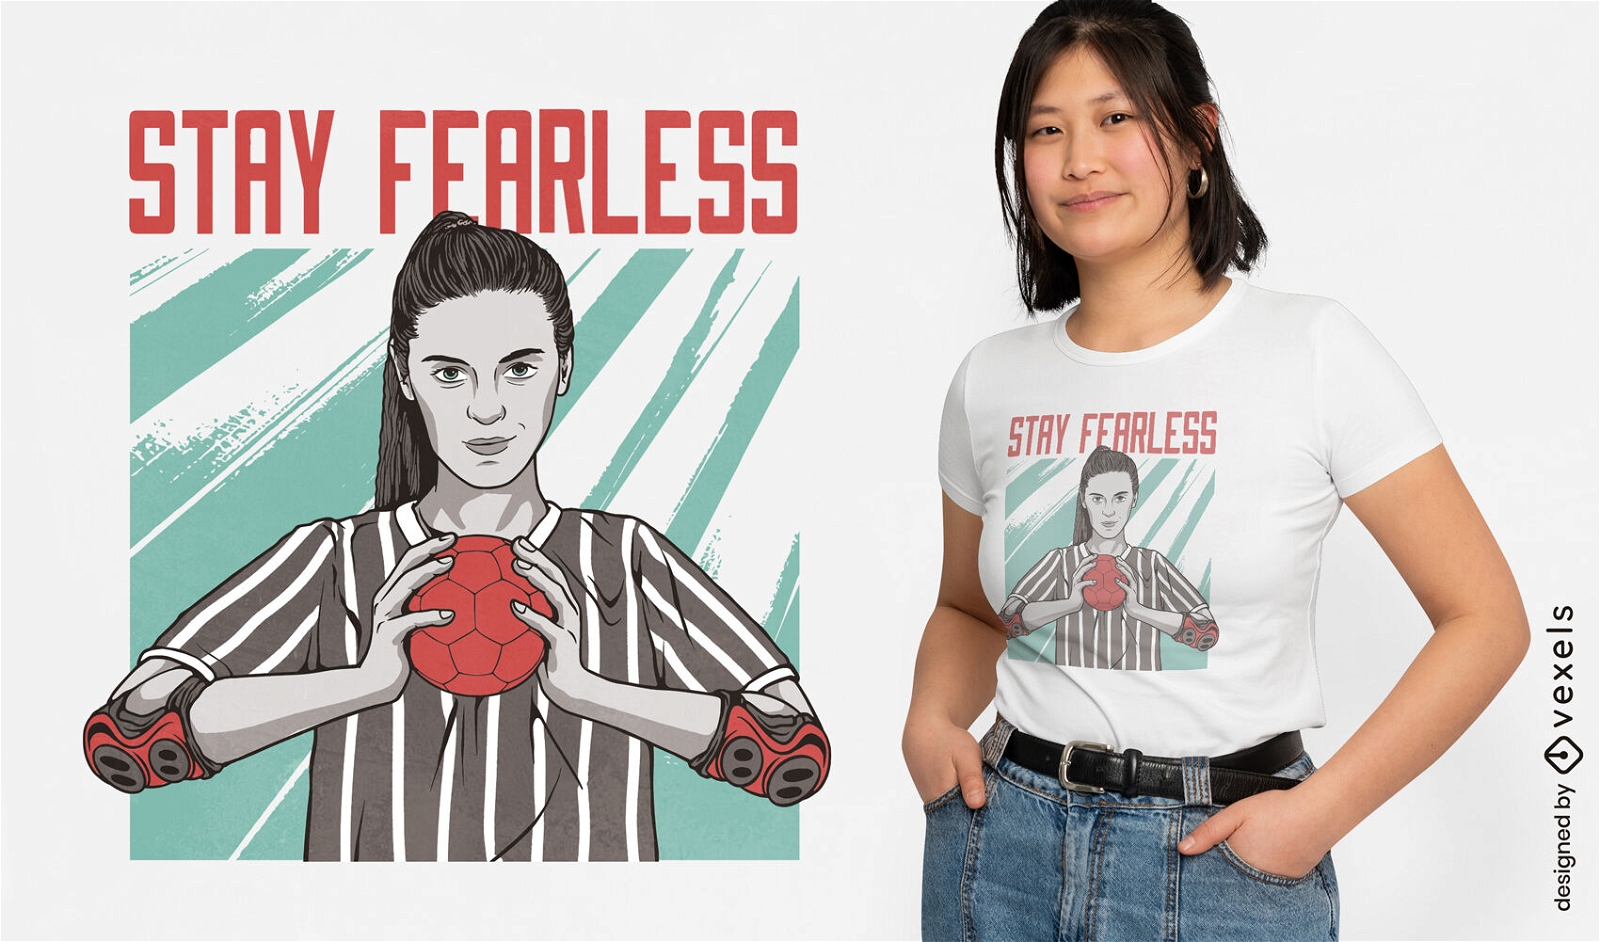 Fearless girl handball player t-shirt design 